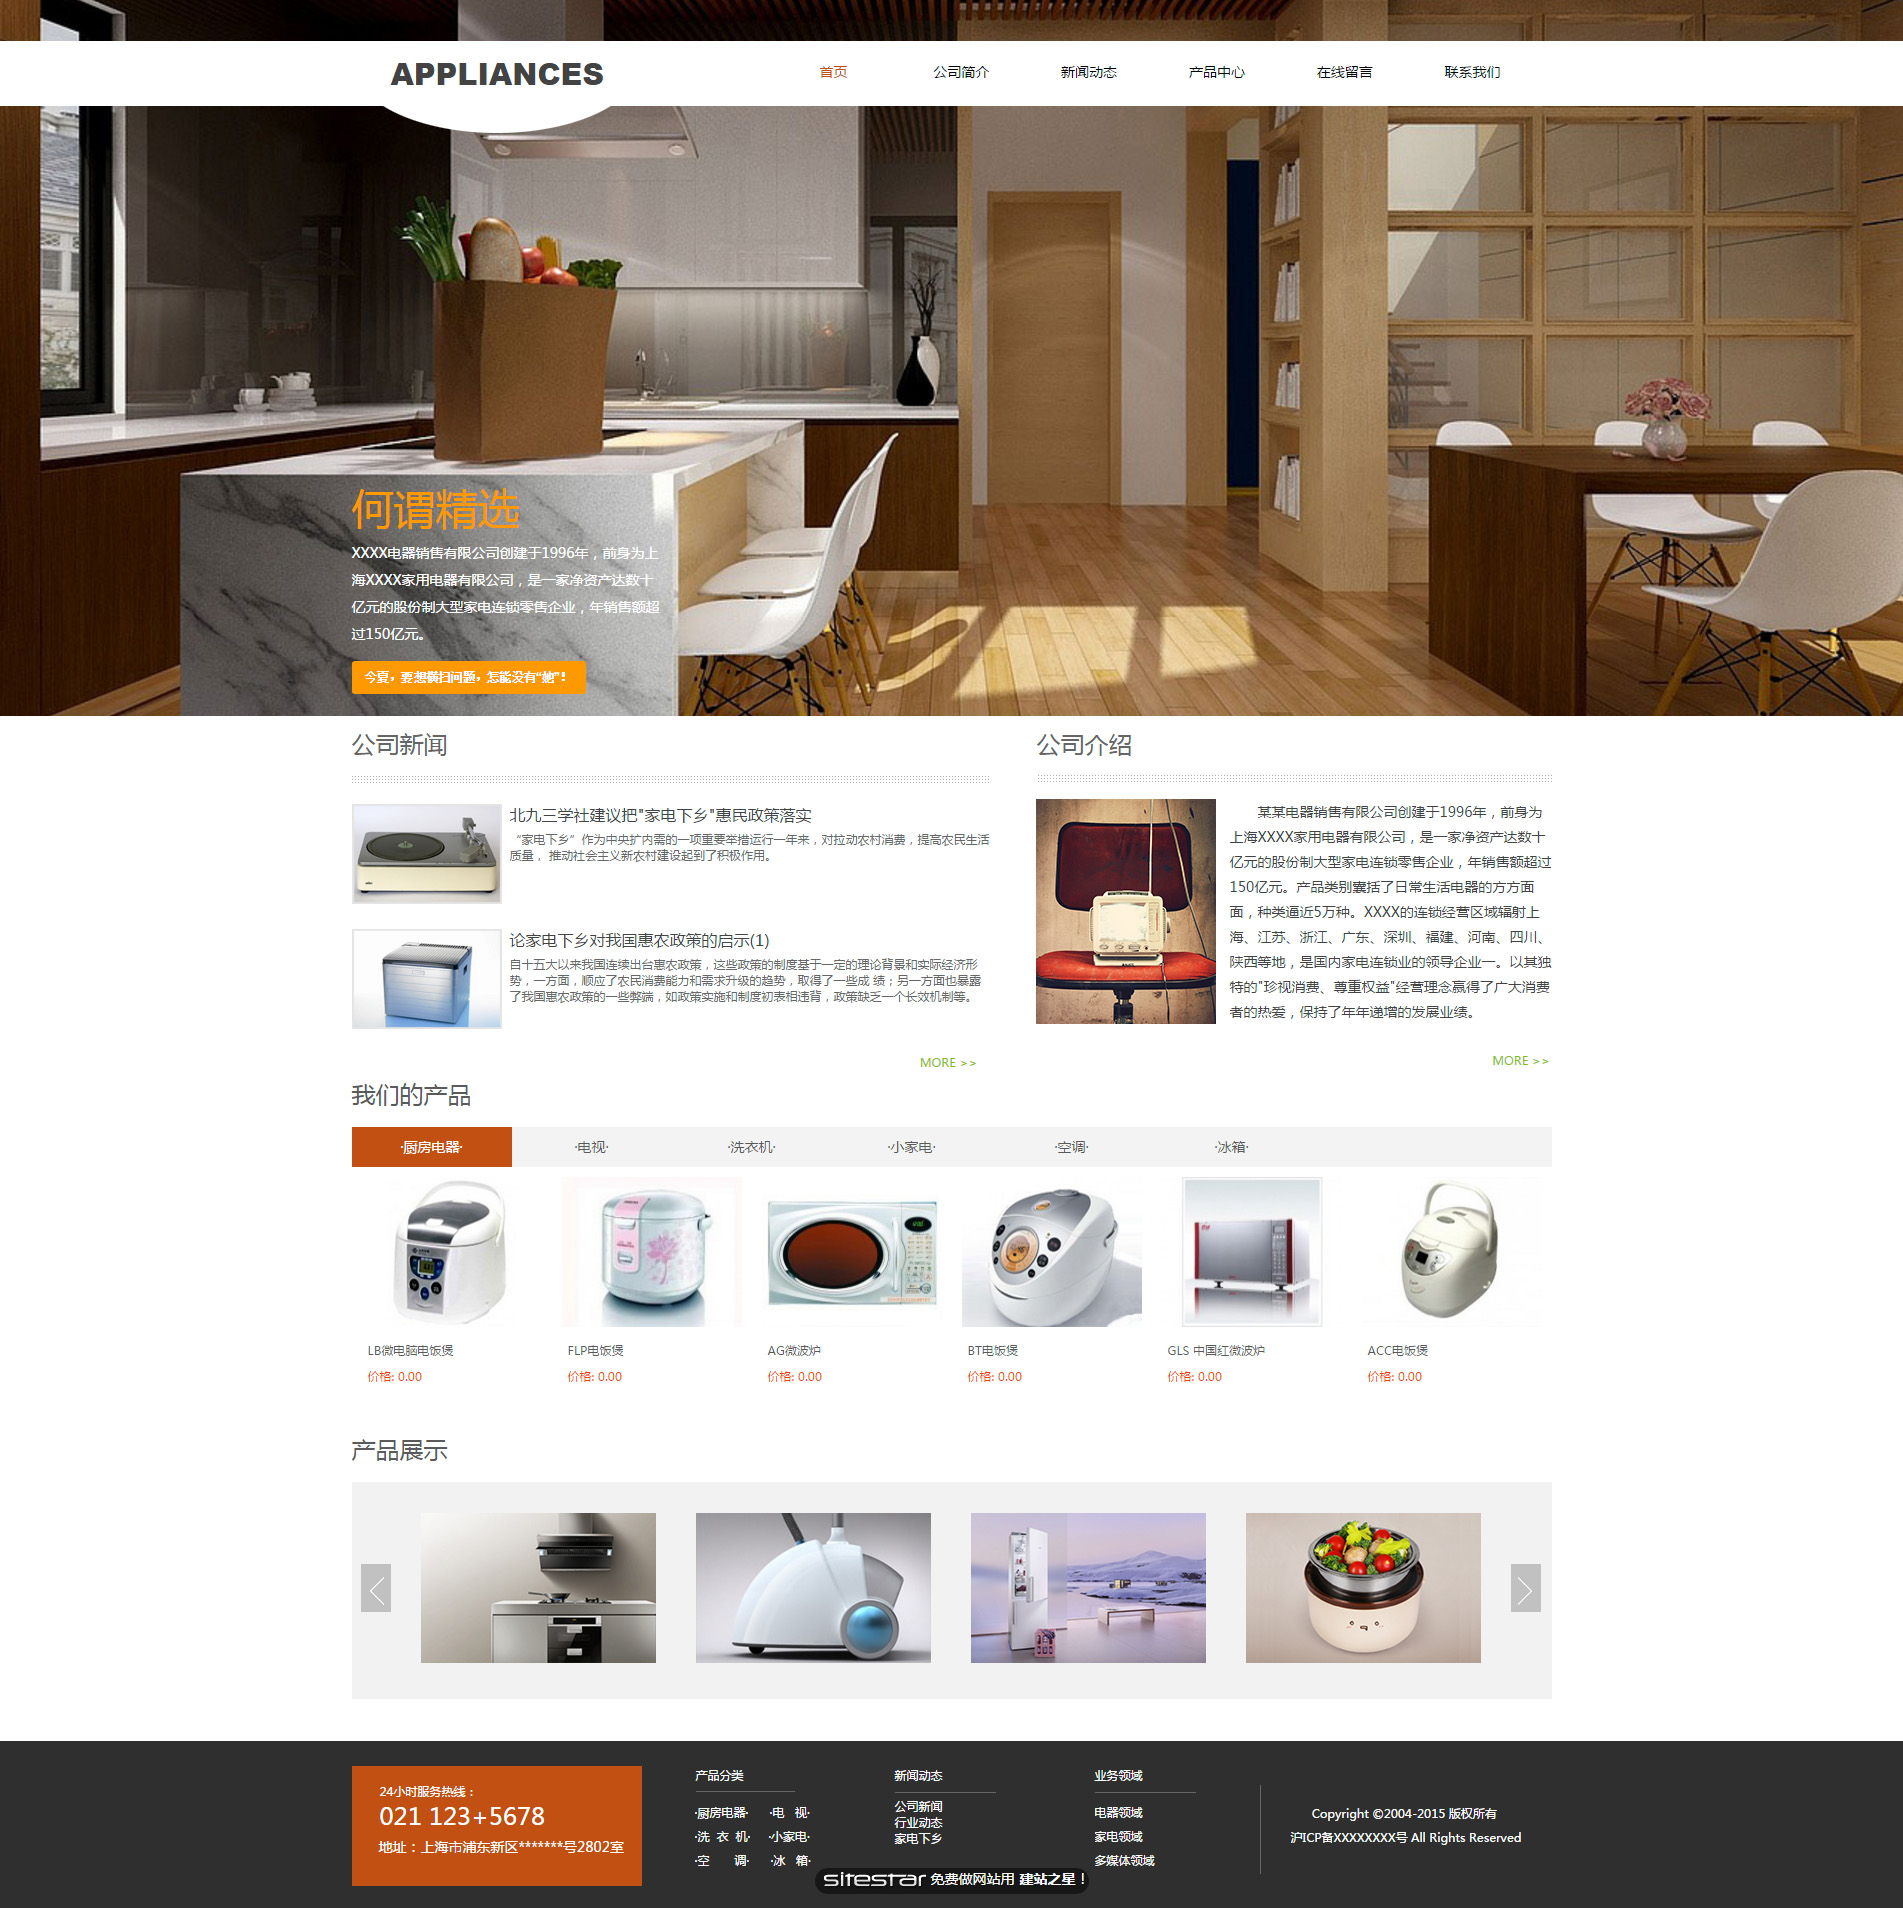 企业网站精美模板-appliances-128